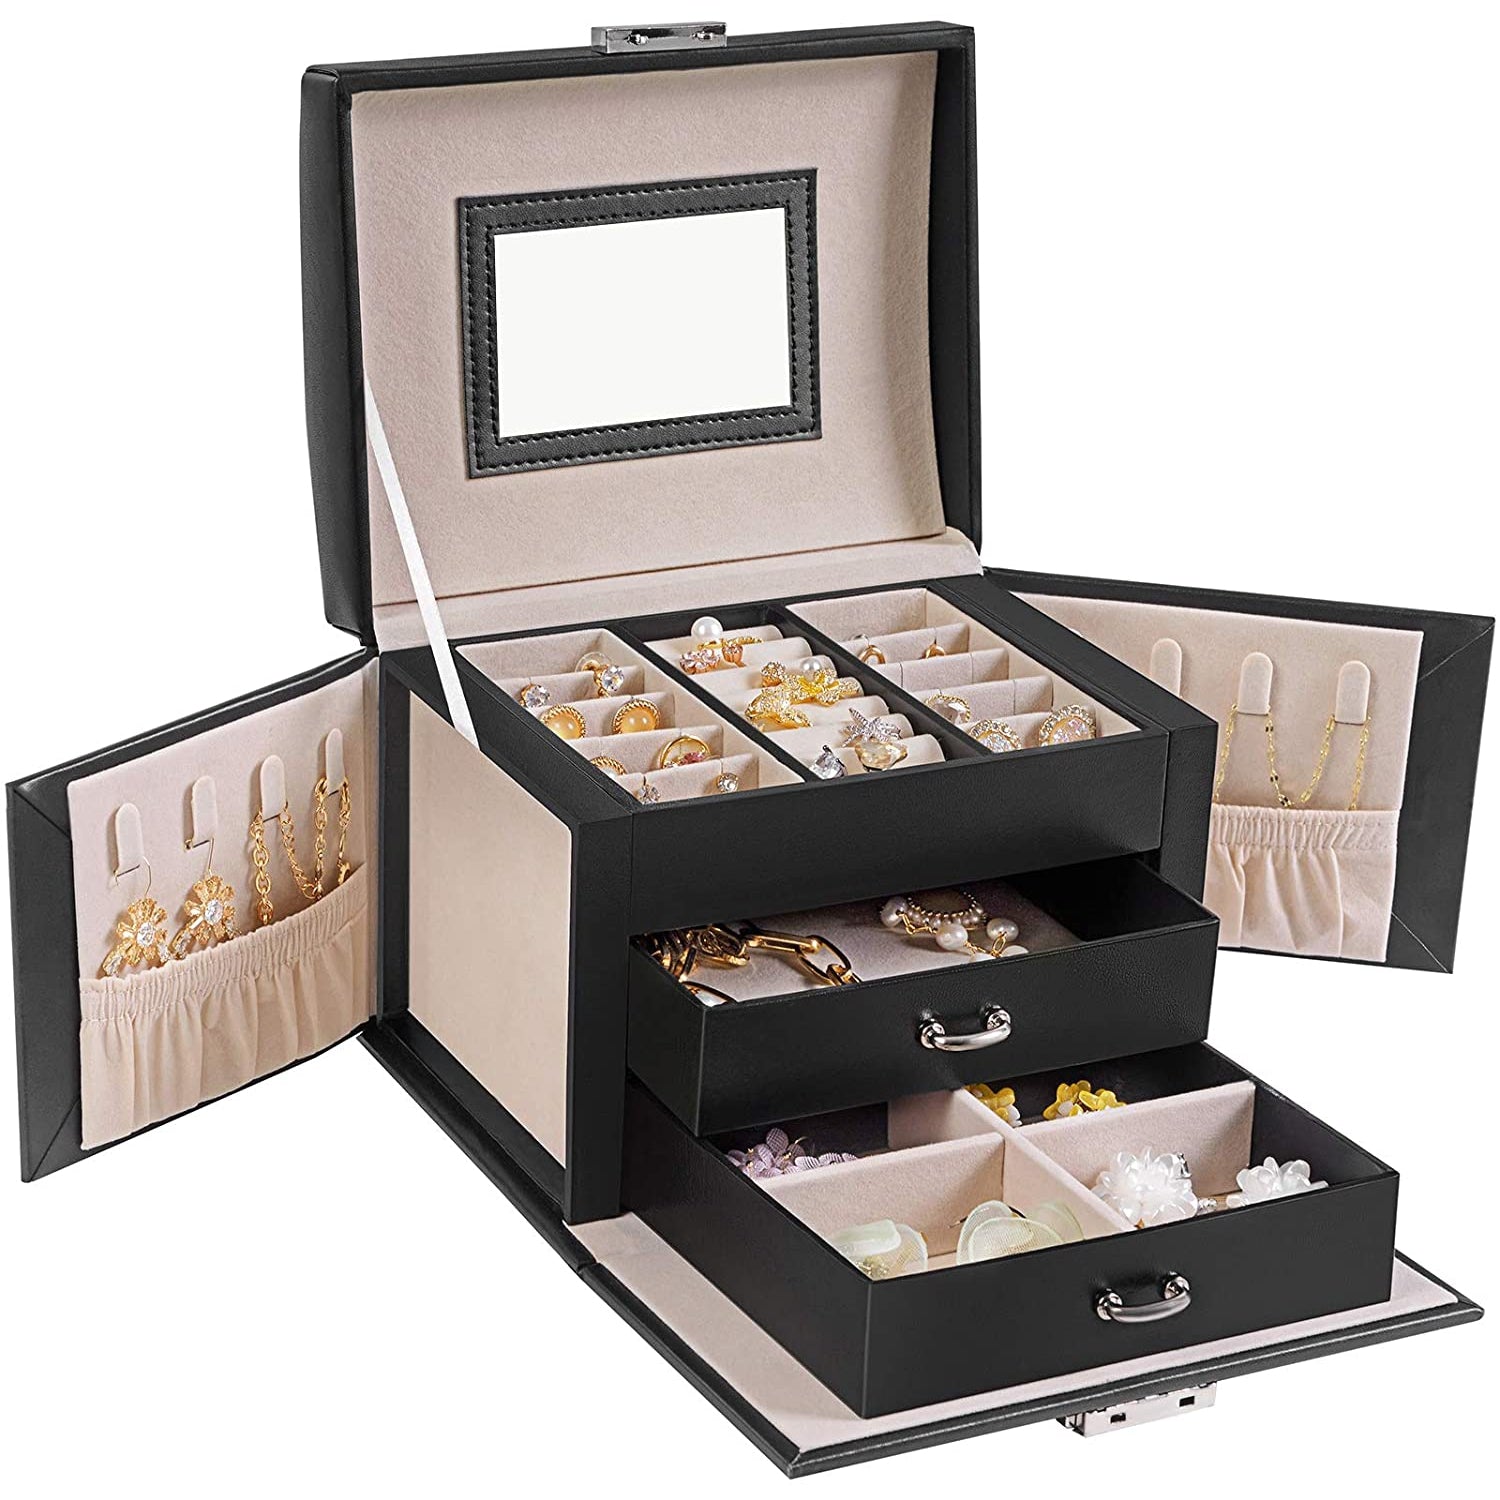 Nancy's Jewelry Box Helena - Jewelry organizer - Jewelry boxes - Black - 17.5 x 13.5 x 12 cm